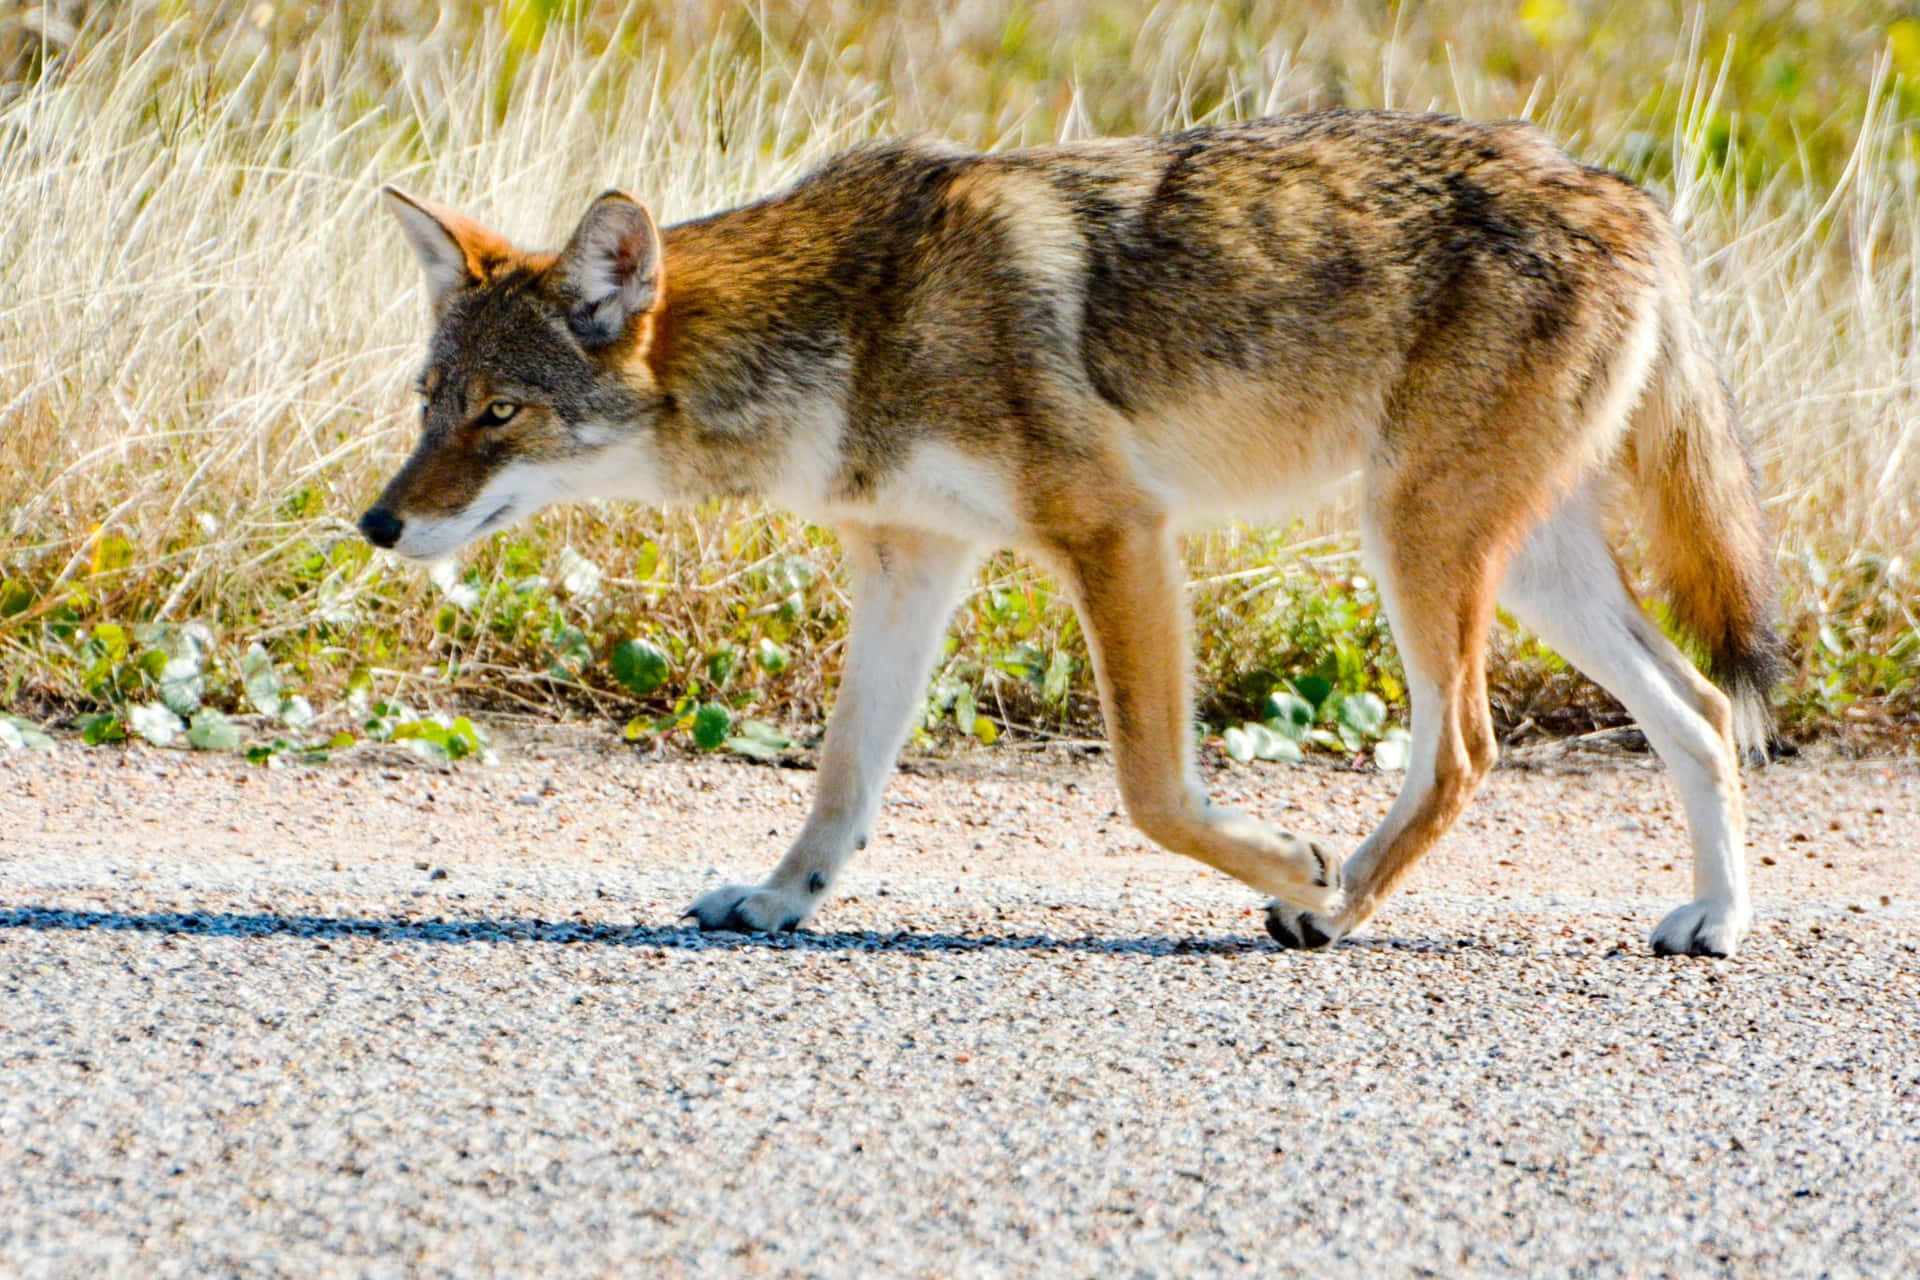 Loborojo Coyote En Verano Fotografía Animal Imagen